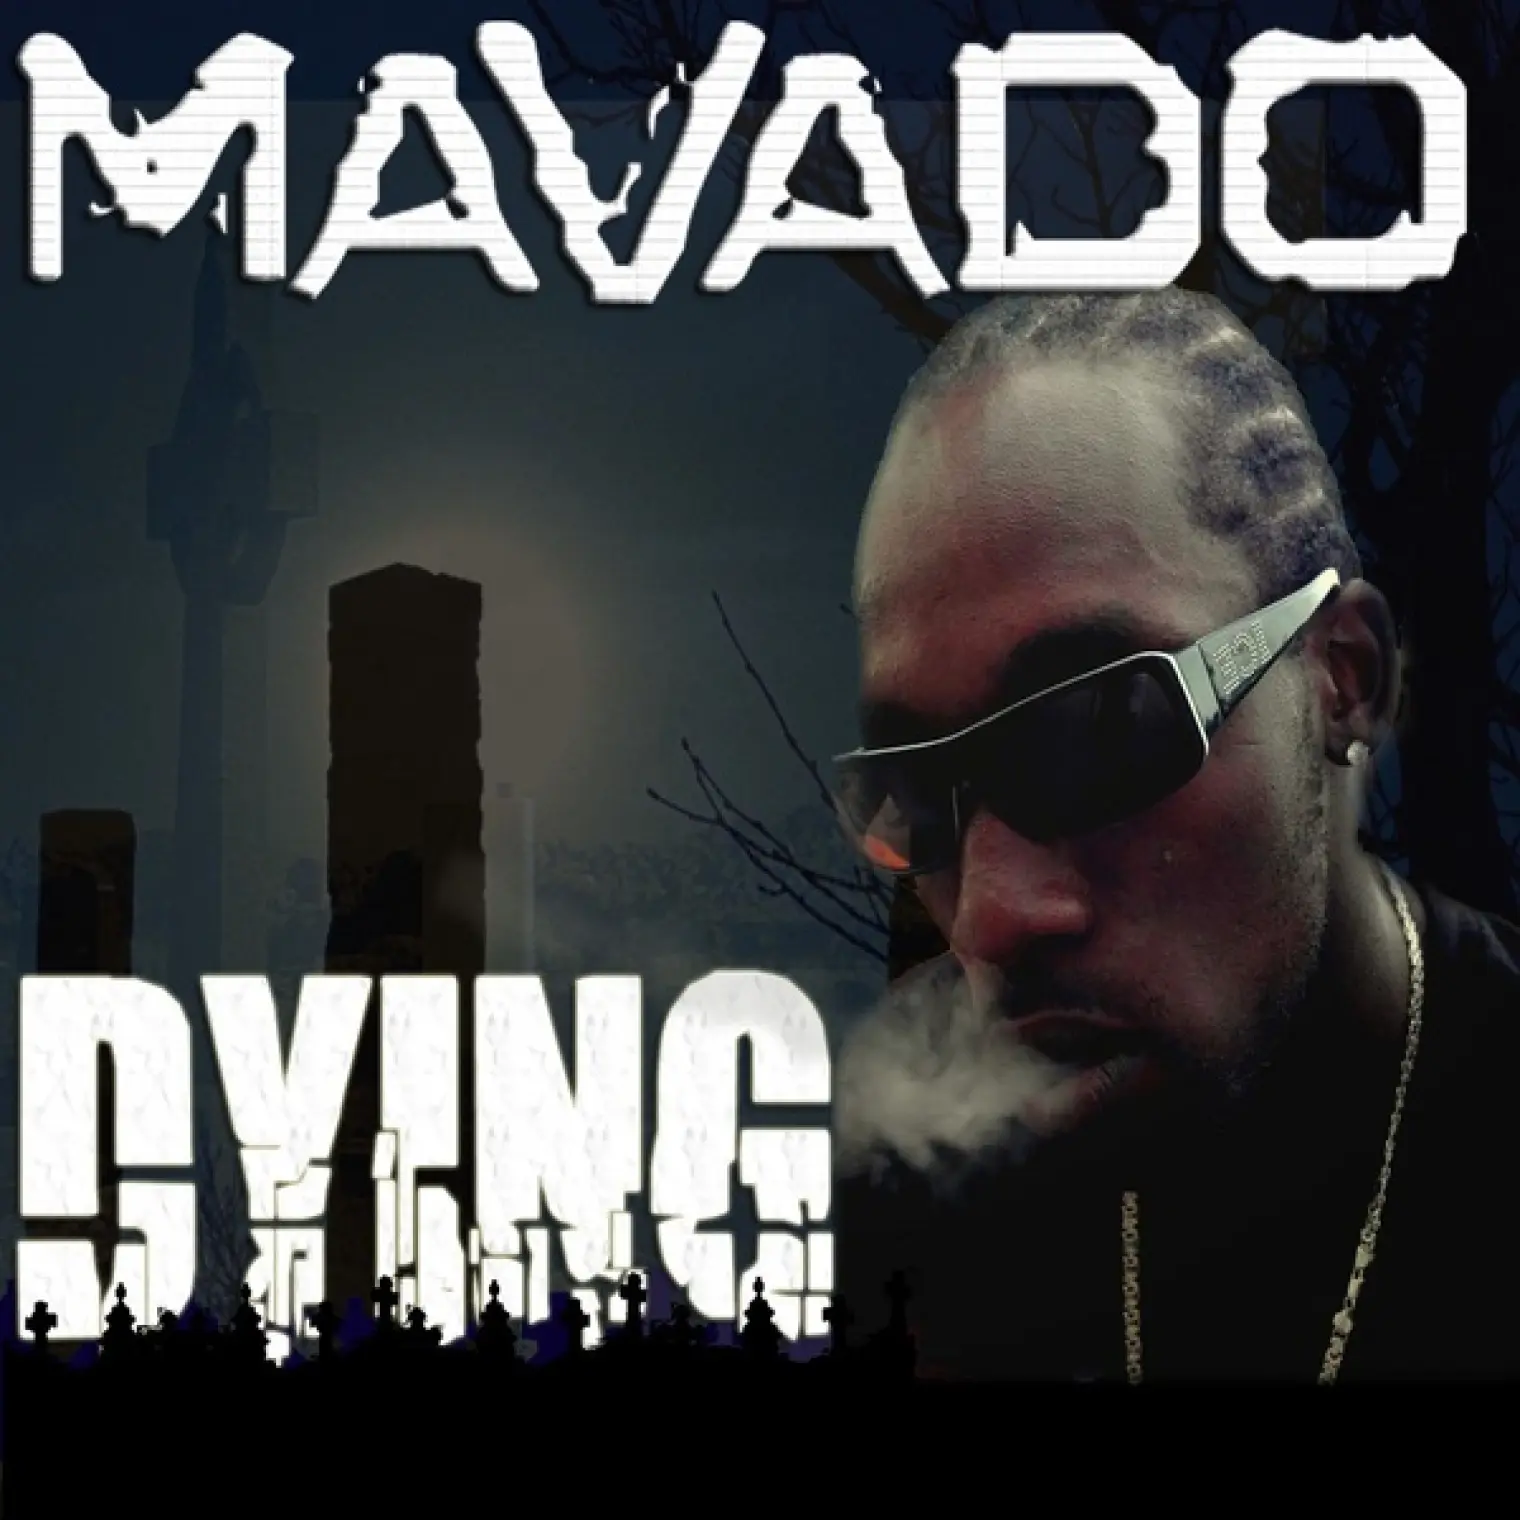 Dying -  Mavado 